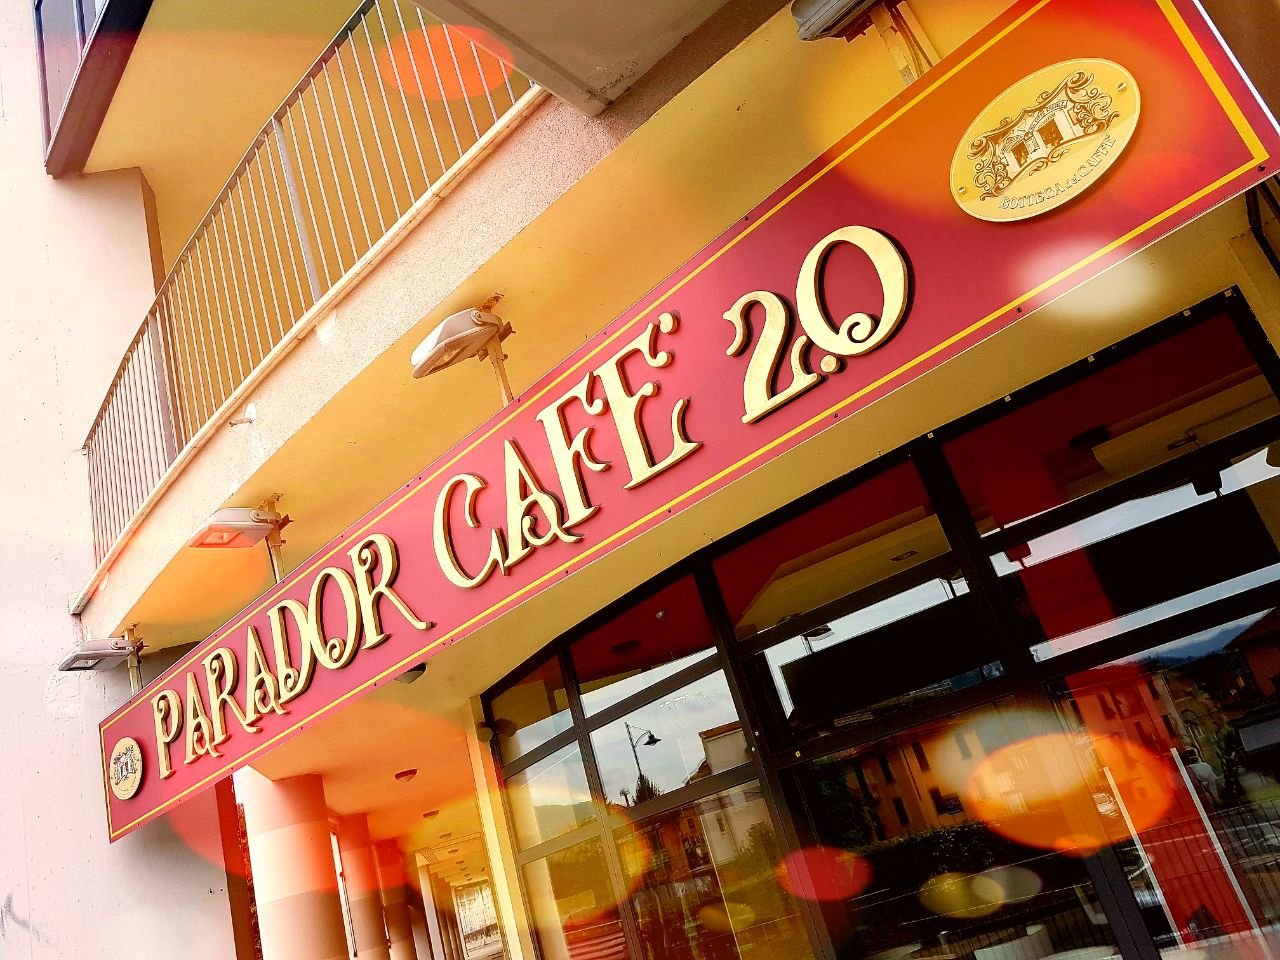 Parador Cafe 2.0, Ceparana